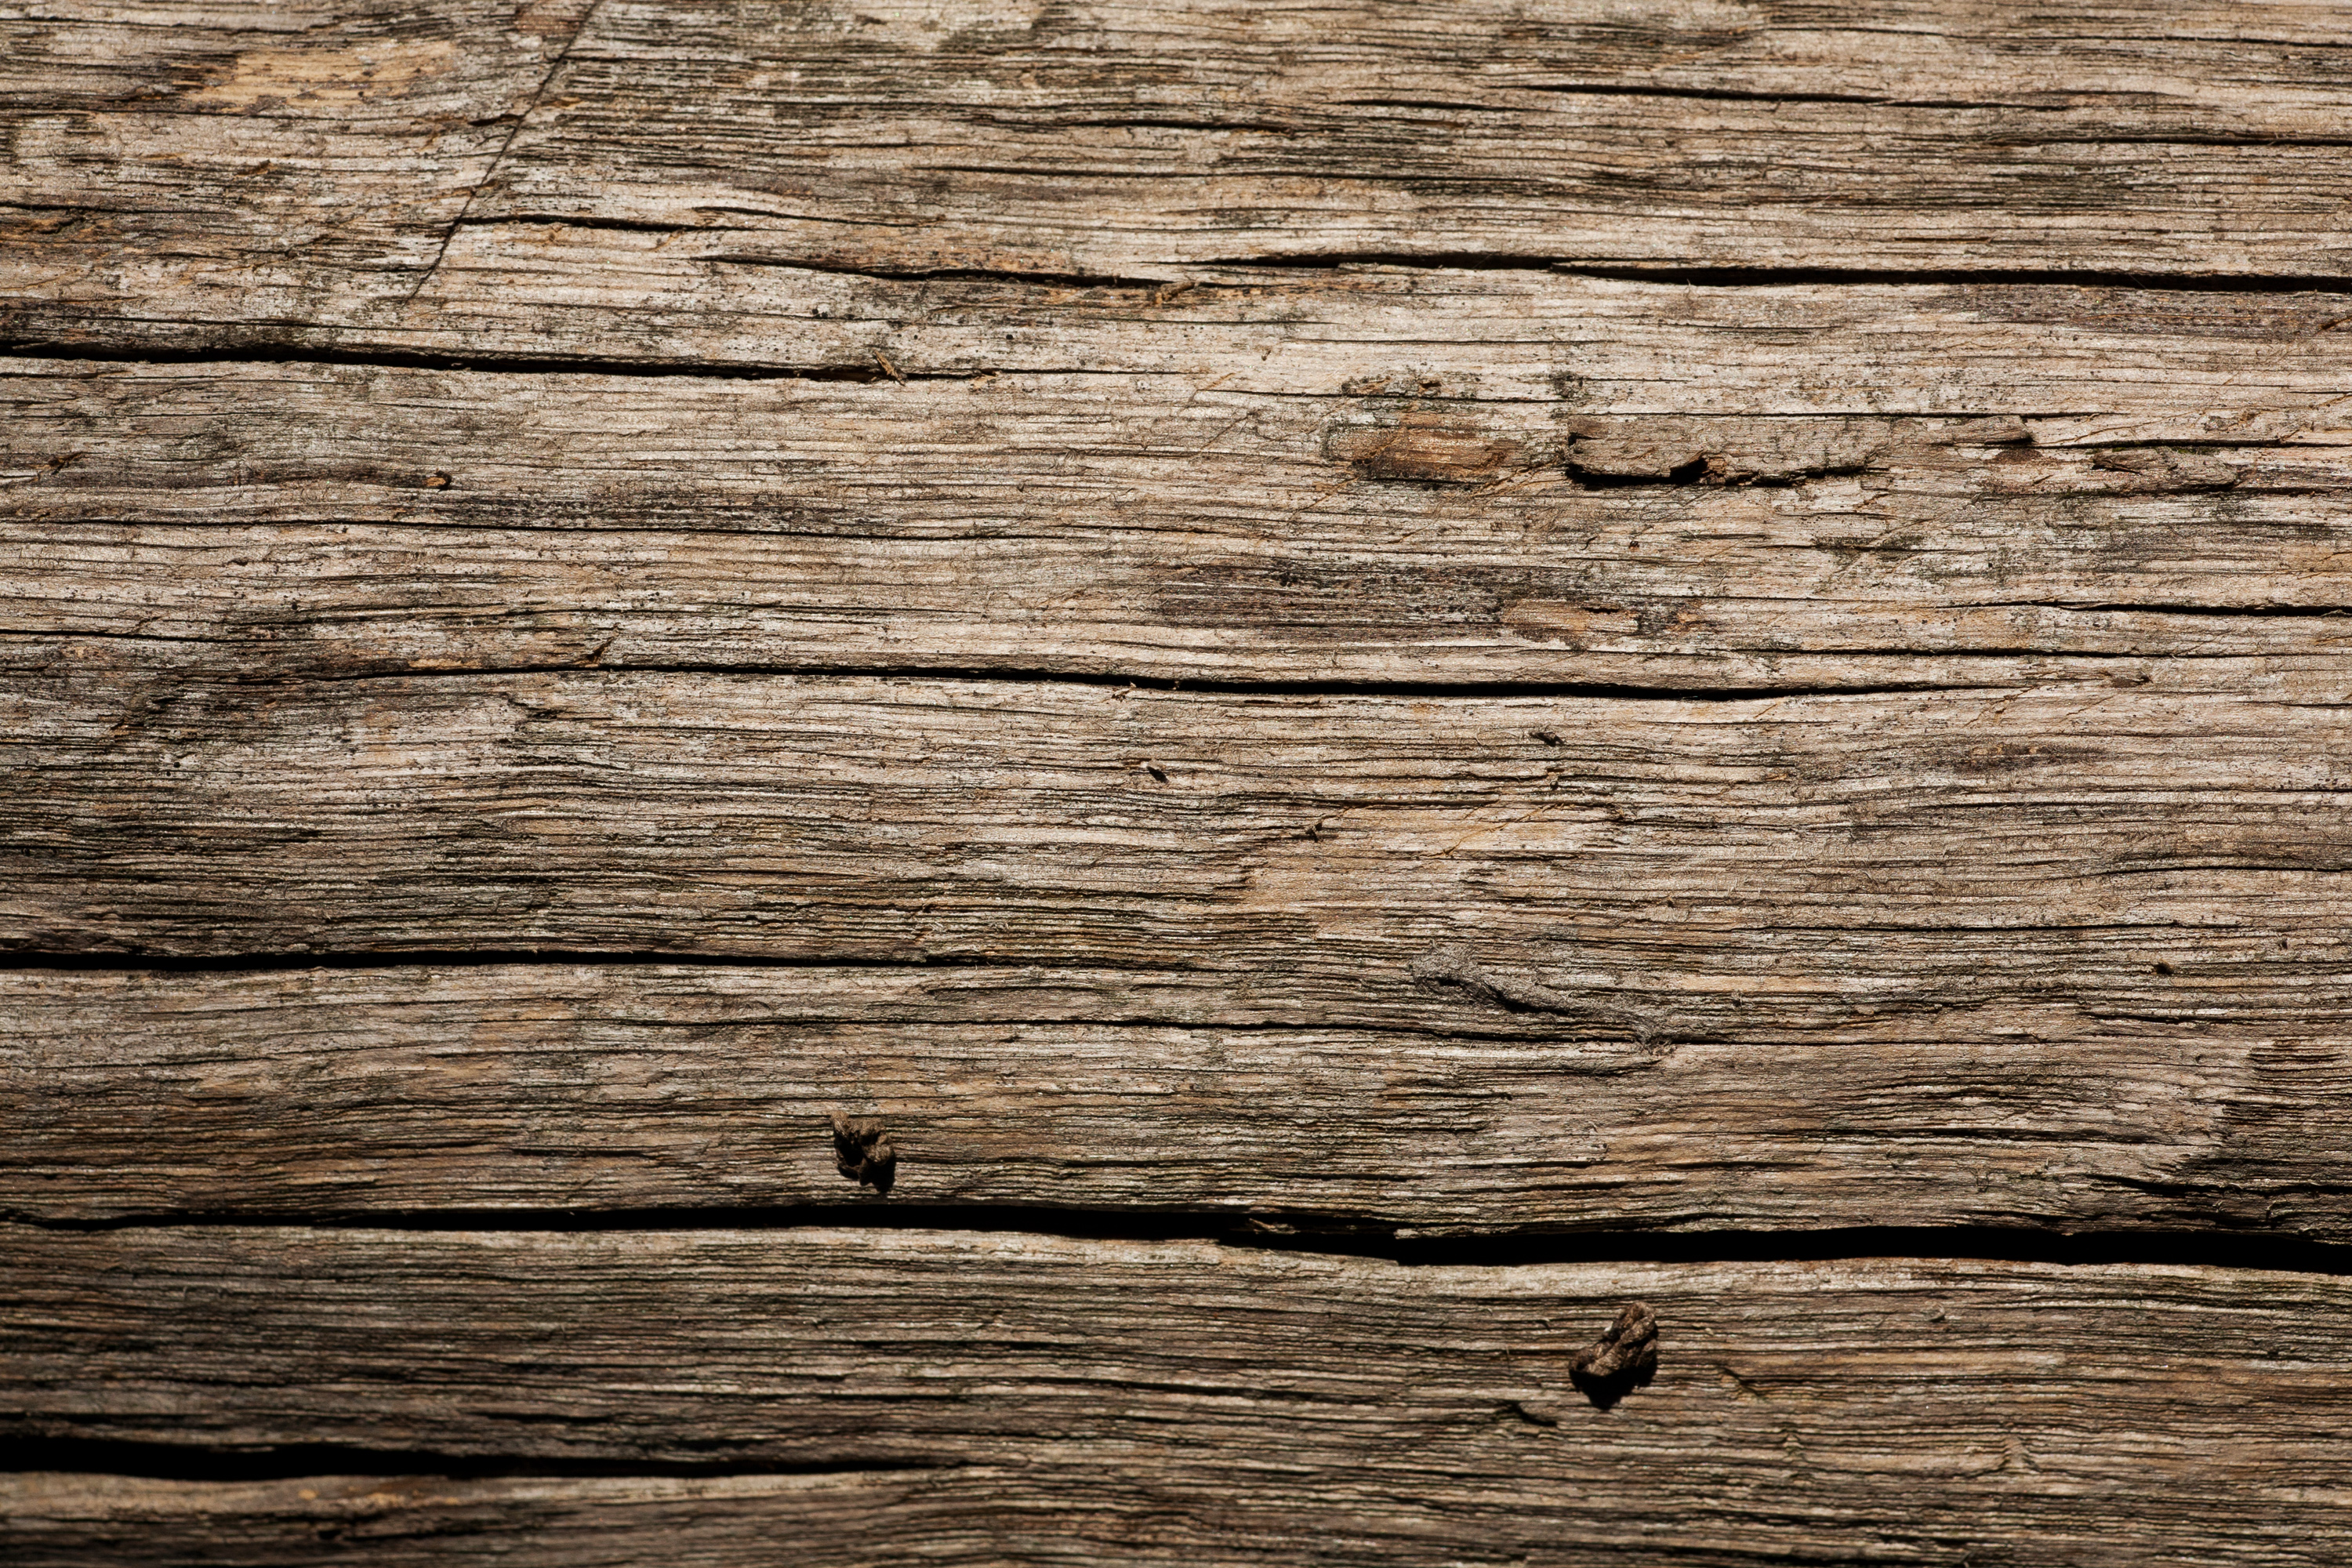 Thưởng thức hình ảnh về texture gỗ cổ, ván gỗ cũ, nền gỗ cũ đầy hấp dẫn và ấn tượng. Các đường vân và mảnh gỗ được sắp xếp tinh tế và chia sẻ một câu chuyện về một thời đại xa xưa và đầy huyền bí. Bạn sẽ không thể rời mắt khỏi những món đồ trong hình ảnh này!